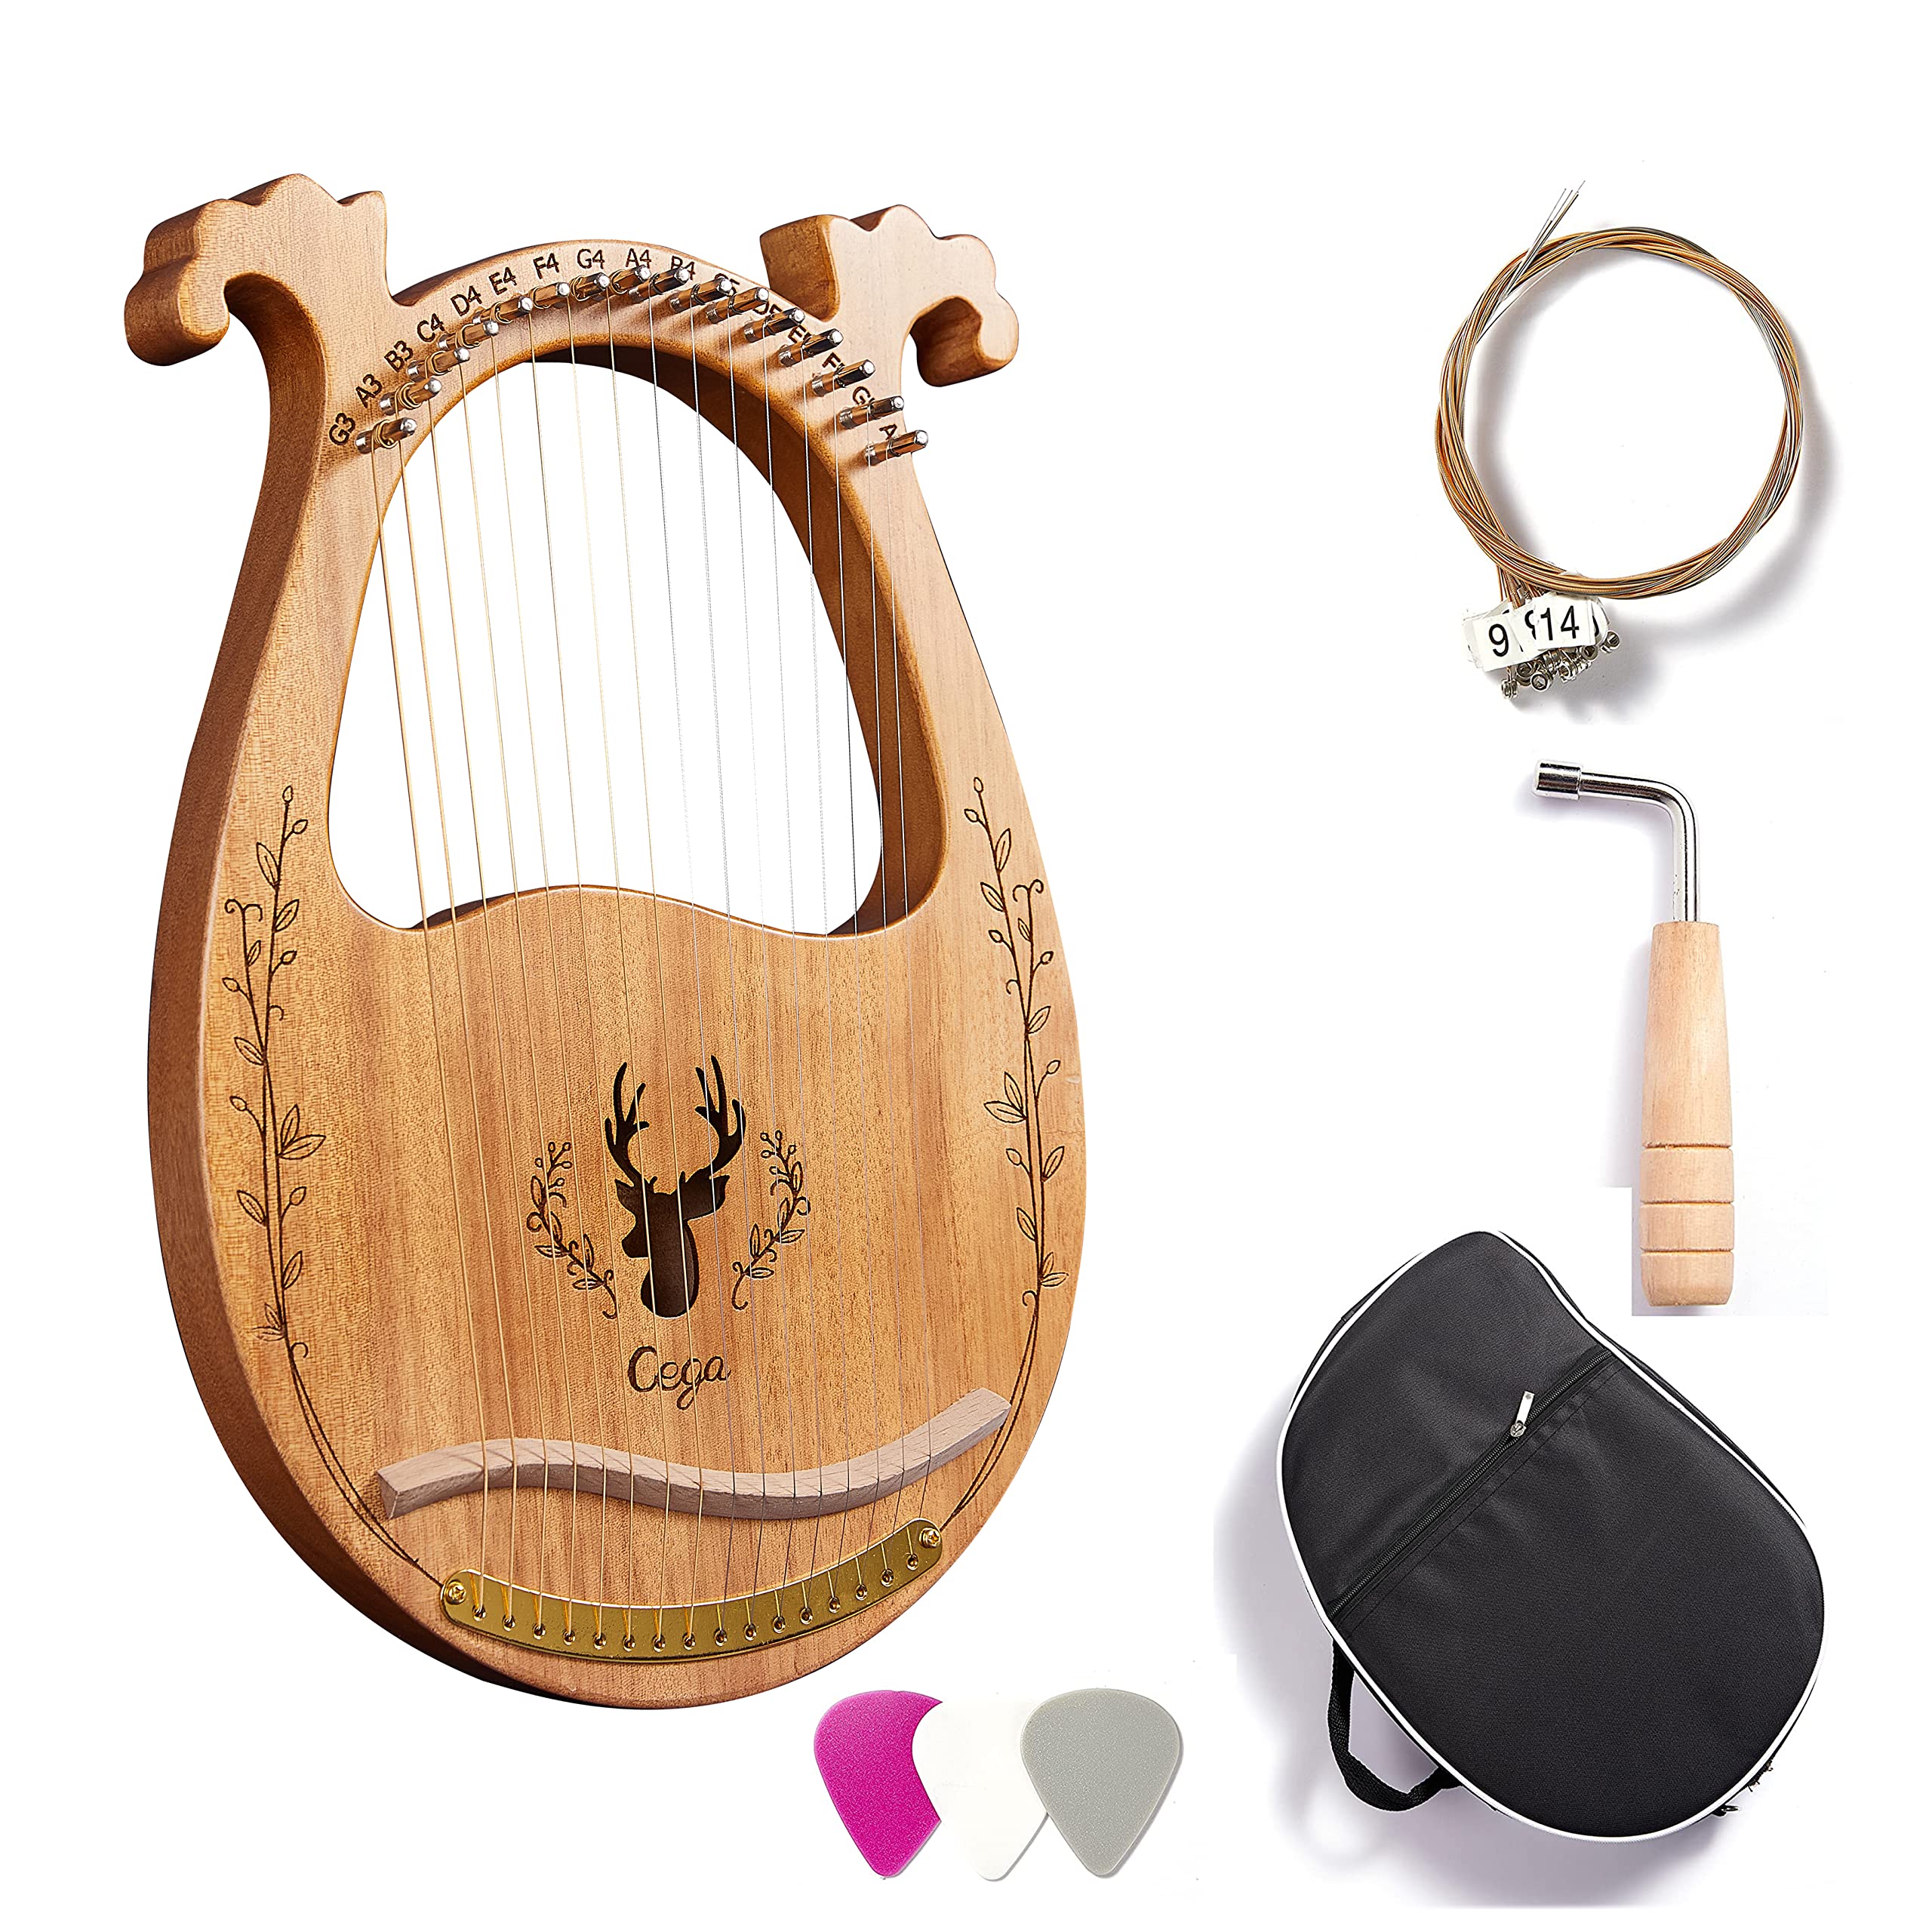 Harfe Instrument,Mahagoni Saiteninstrument Tragbare 16 Saiten Lyre Harfe für Erwachsene Kinder Anfänger,Metall Saiten,Mit Stimmschlüssel Und Saiten,Tragetasche